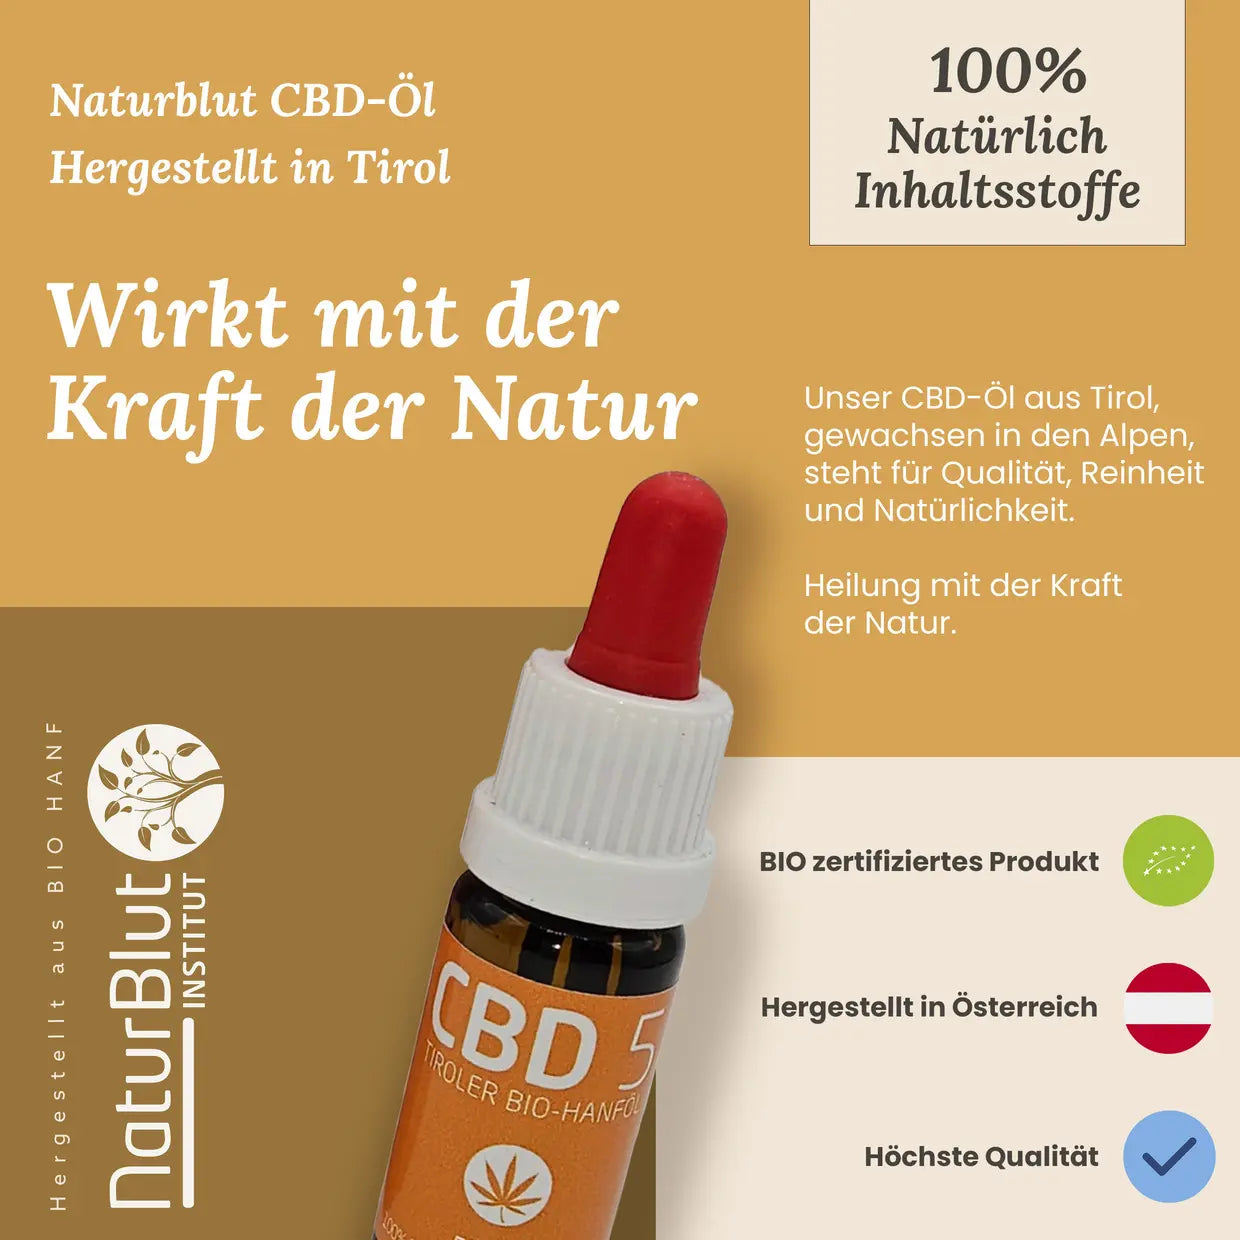 Naturblut CBD Öl